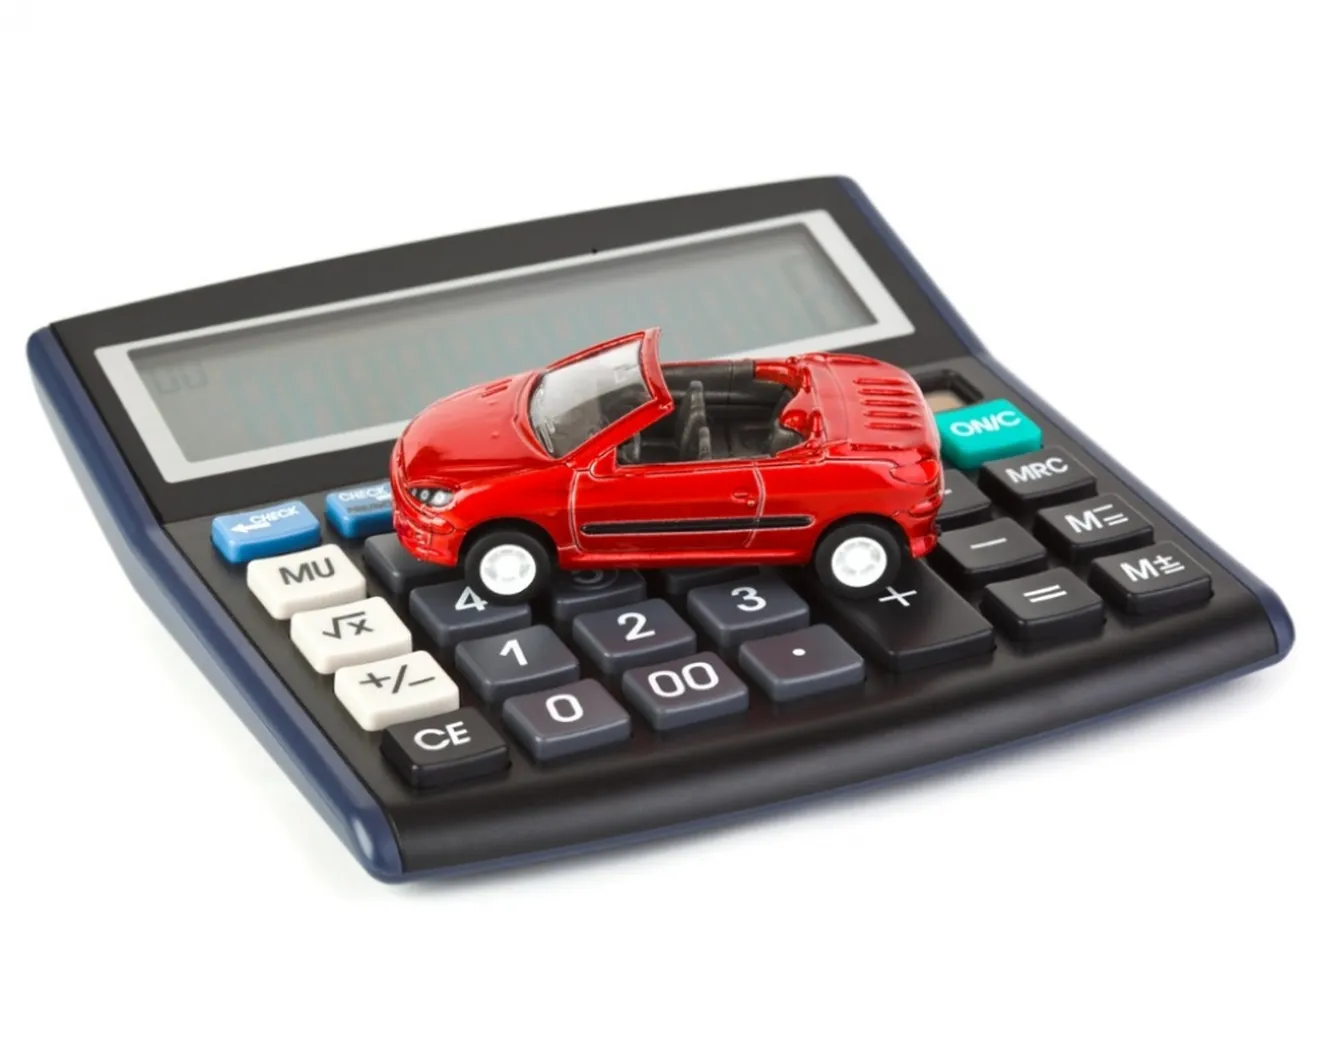 Comparador de seguros, ahorra hasta un 50% en el precio del seguro de coche o moto